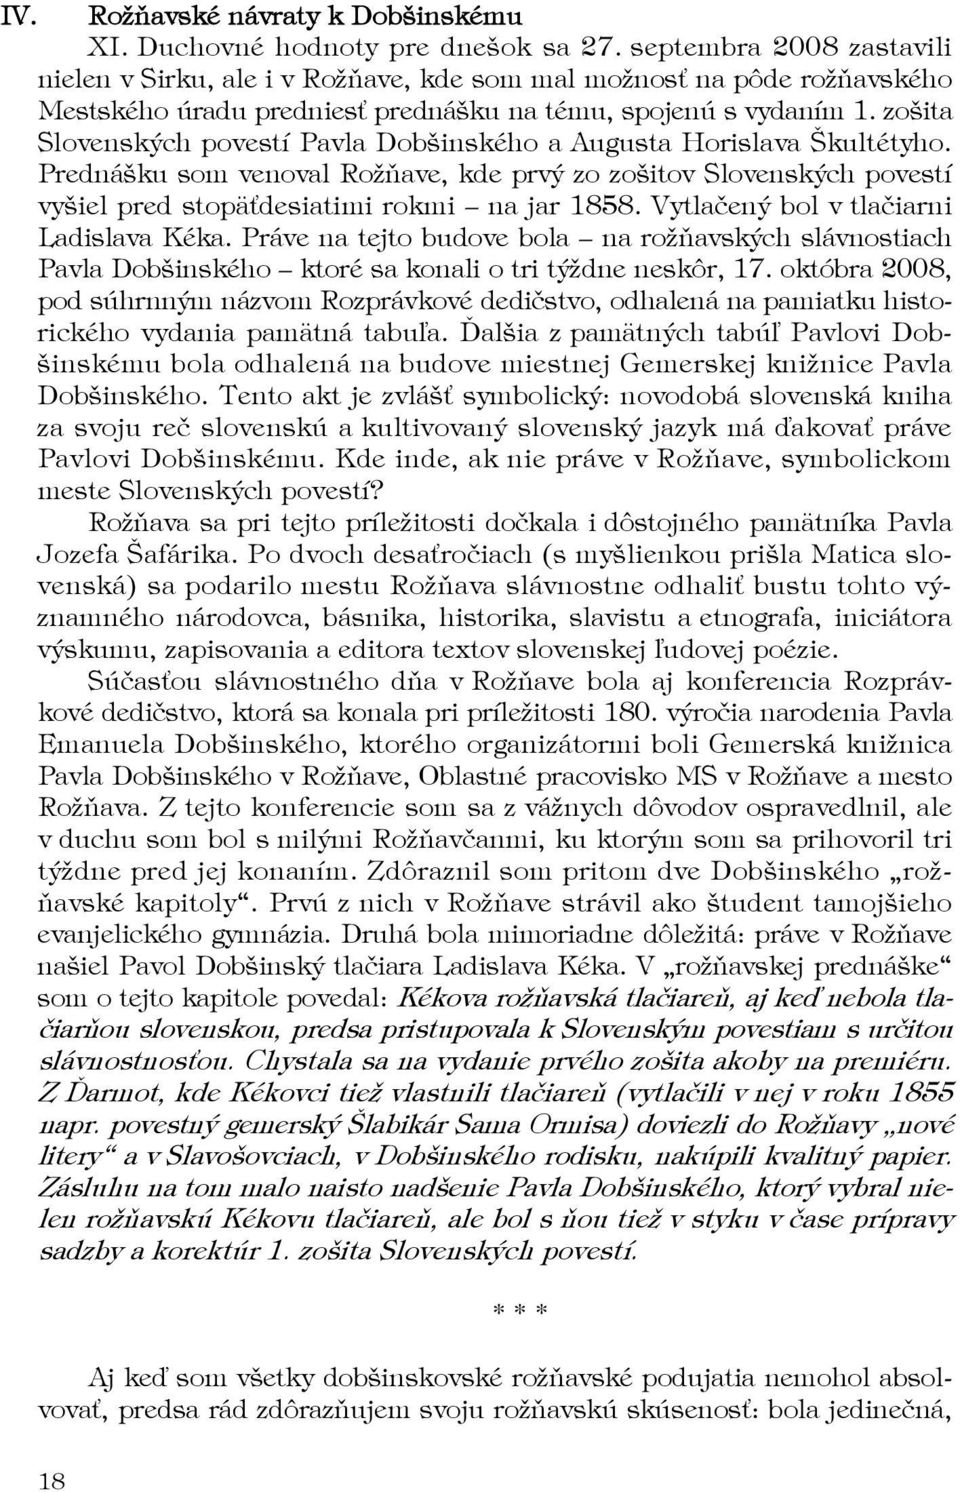 zošita Slovenských povestí Pavla Dobšinského a Augusta Horislava Škultétyho. Prednášku som venoval Rožňave, kde prvý zo zošitov Slovenských povestí vyšiel pred stopäťdesiatimi rokmi na jar 1858.